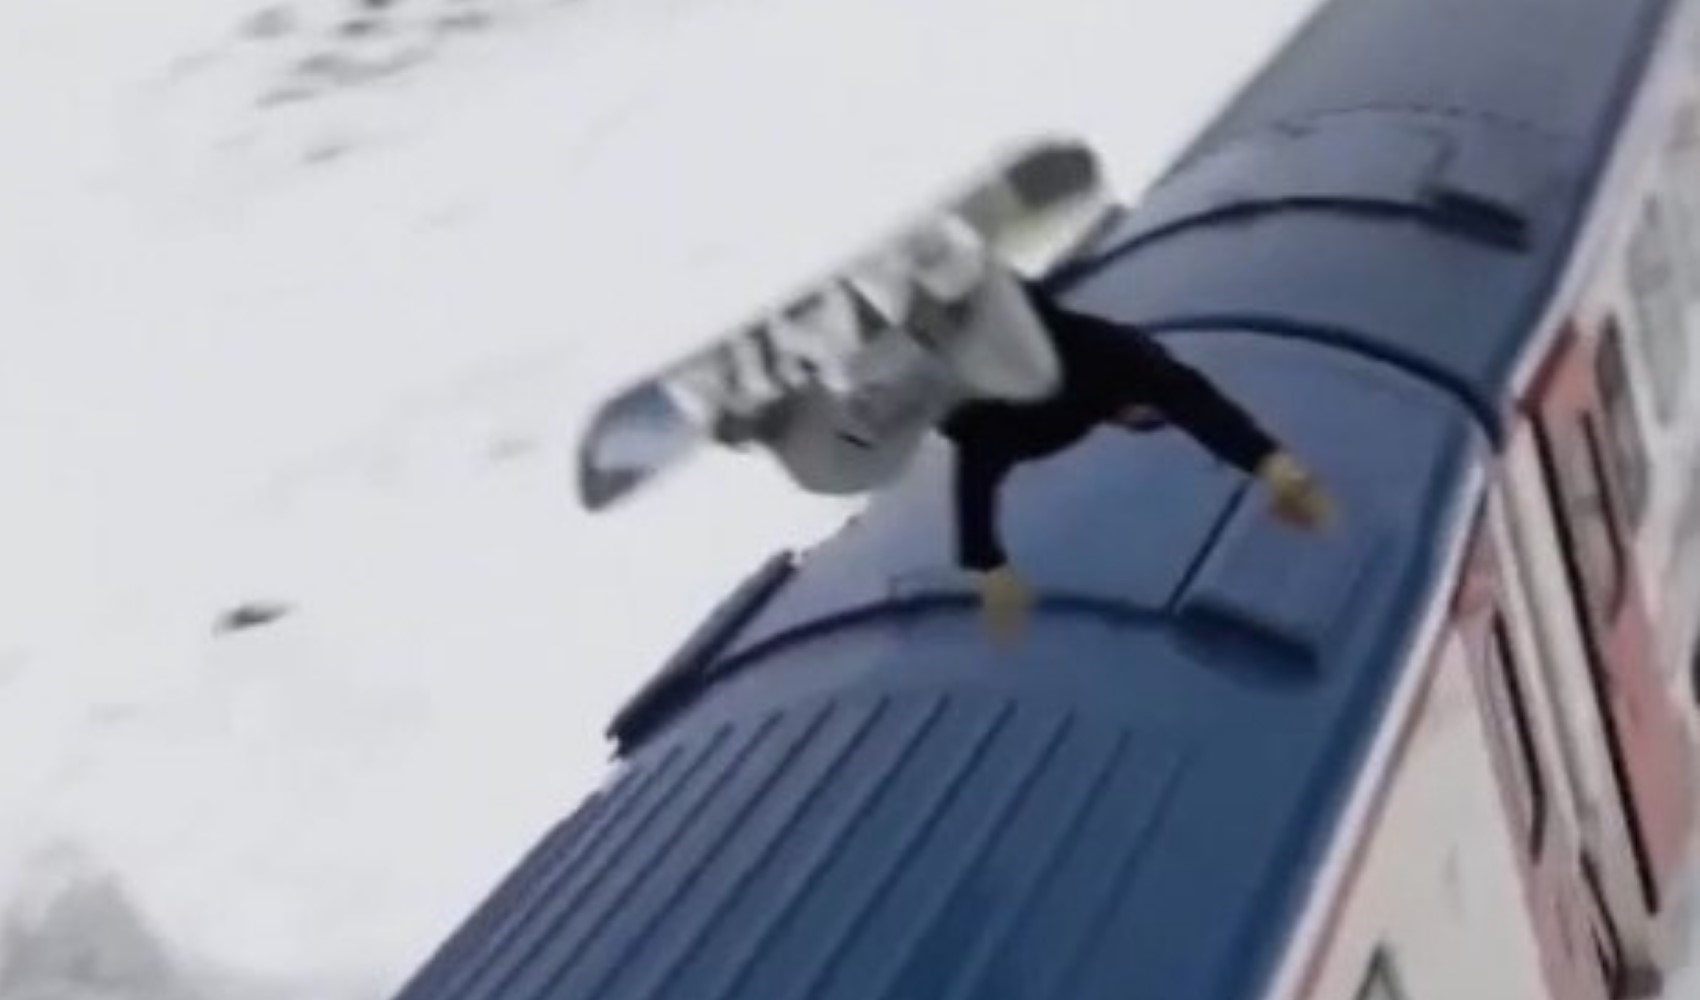 Turistik Doğu Ekspresi'ne dikkati çekmek için trenin üzerinden snowboard ile atladı